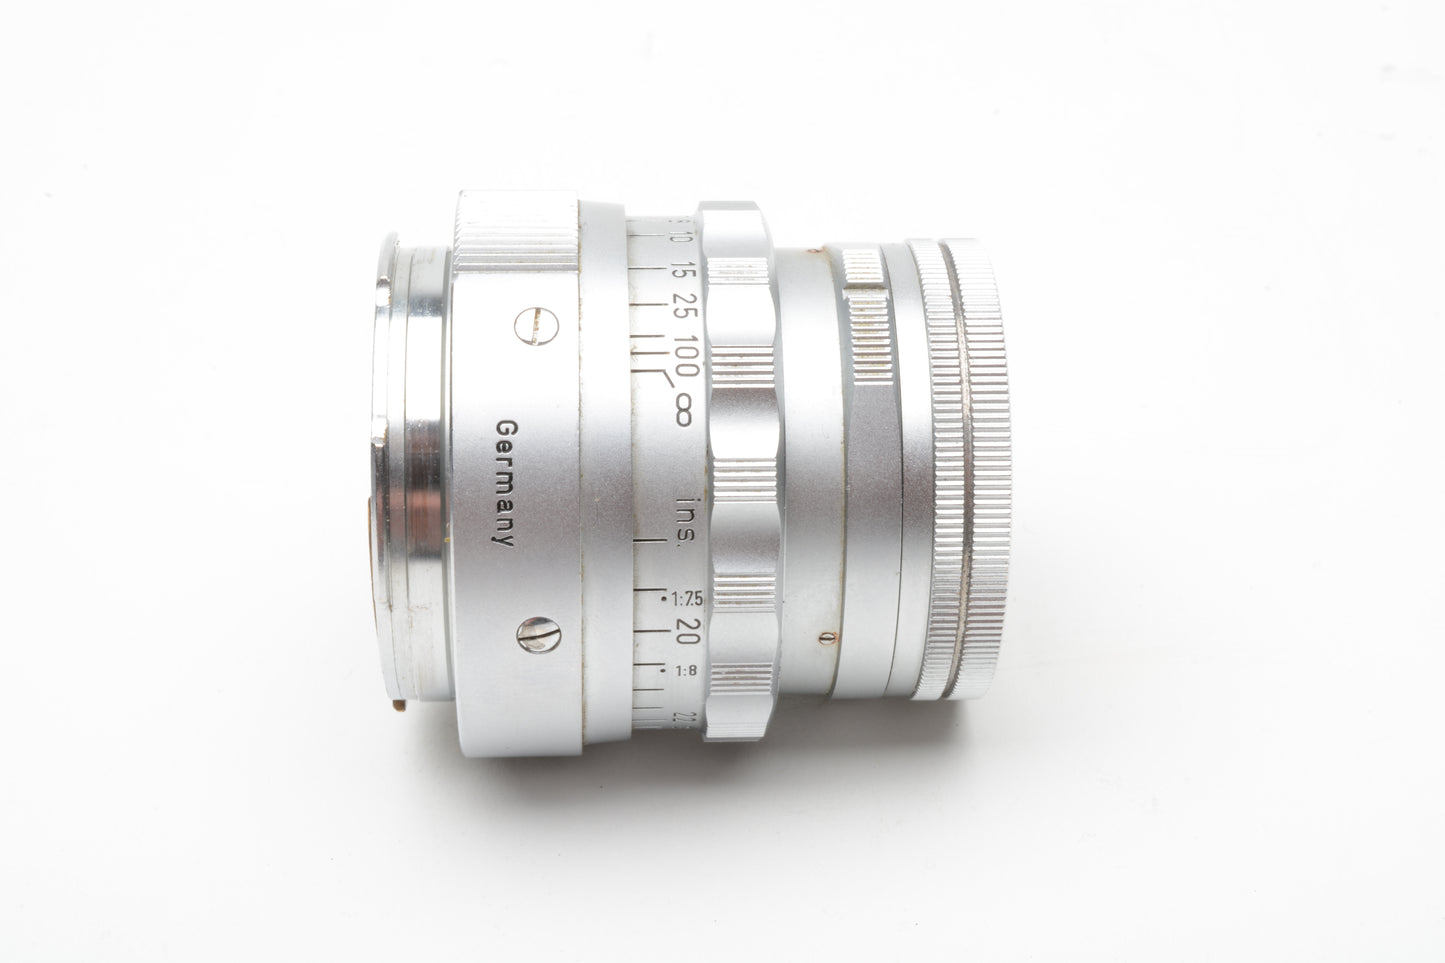 Leica Leitz Summicron 5cm (50mm) f2 rigid lens, case + cap, very nice!